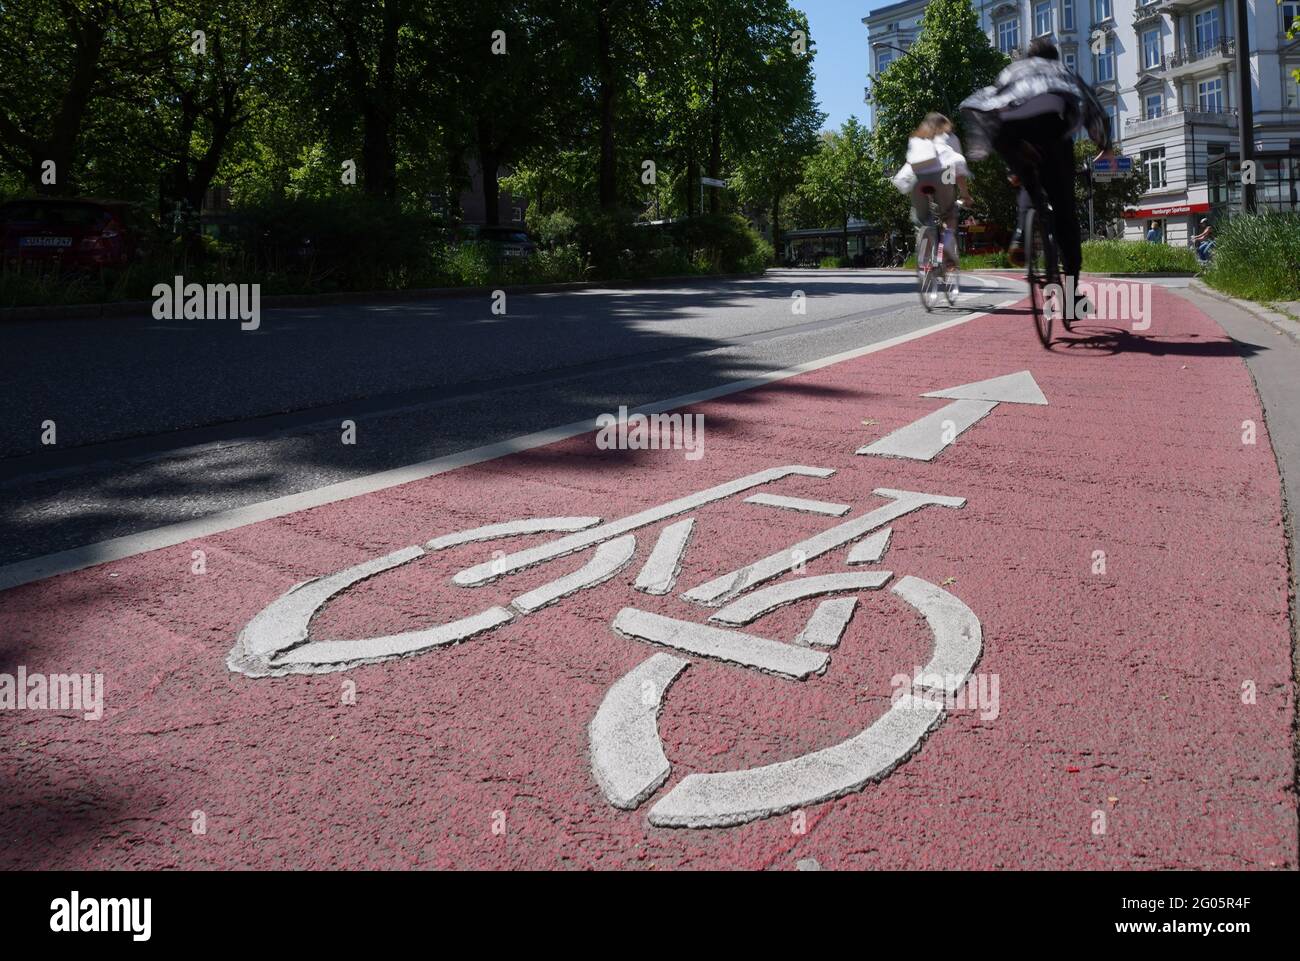 Amburgo, Germania. 31 maggio 2021. I ciclisti cavalcano nella pista  ciclabile segnata con vernice rossa a  Klosterstersterstersterstersterstersterstern. Le biciclette sono ovviamente  un mezzo di trasporto più popolare nel pianeggiante nord della Germania